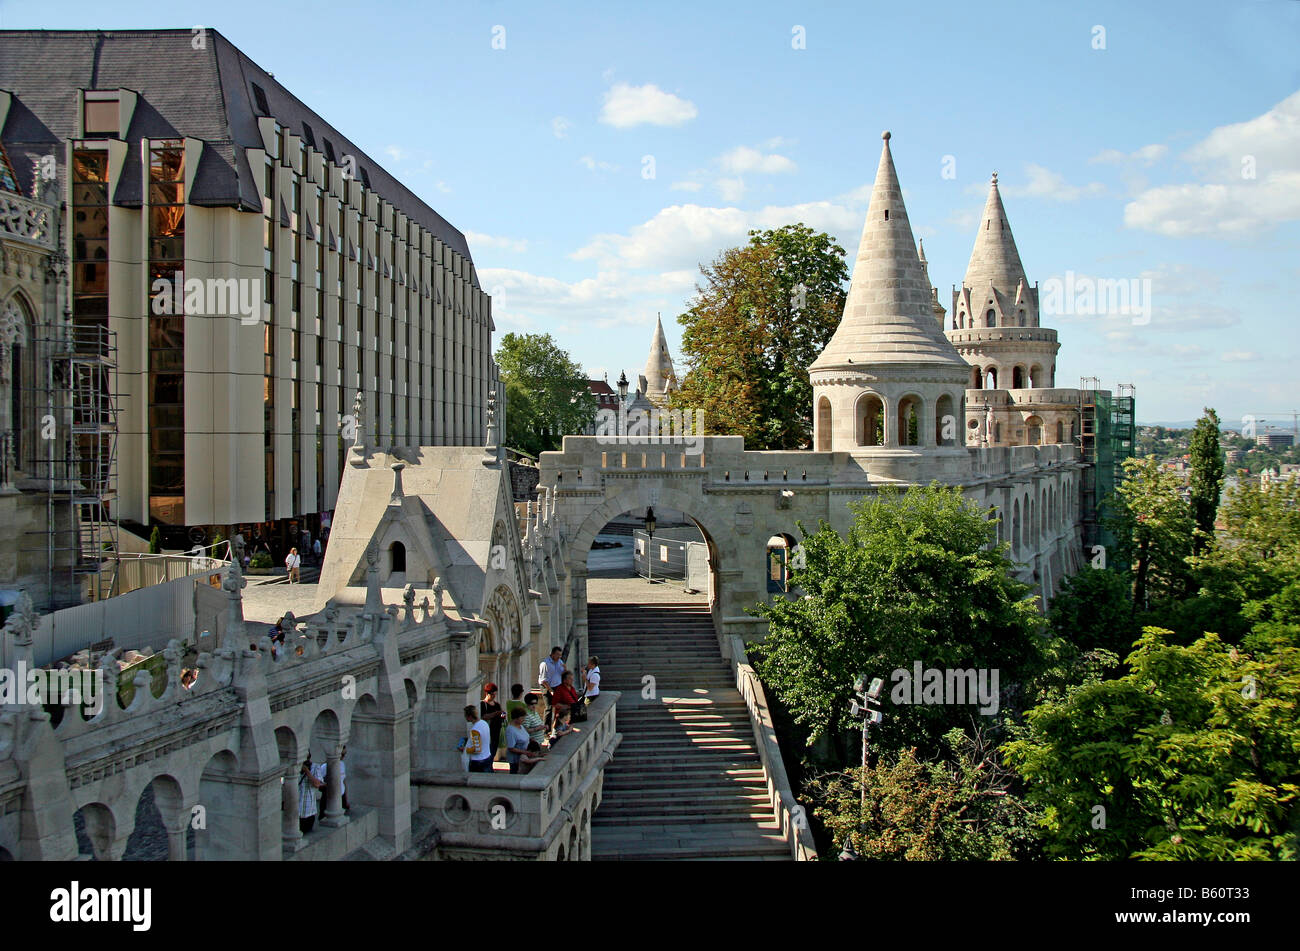 Halászbástya or Fisherman's Bastion, Hilton Hotel on the left, Budapest, Hungary, Europe Stock Photo